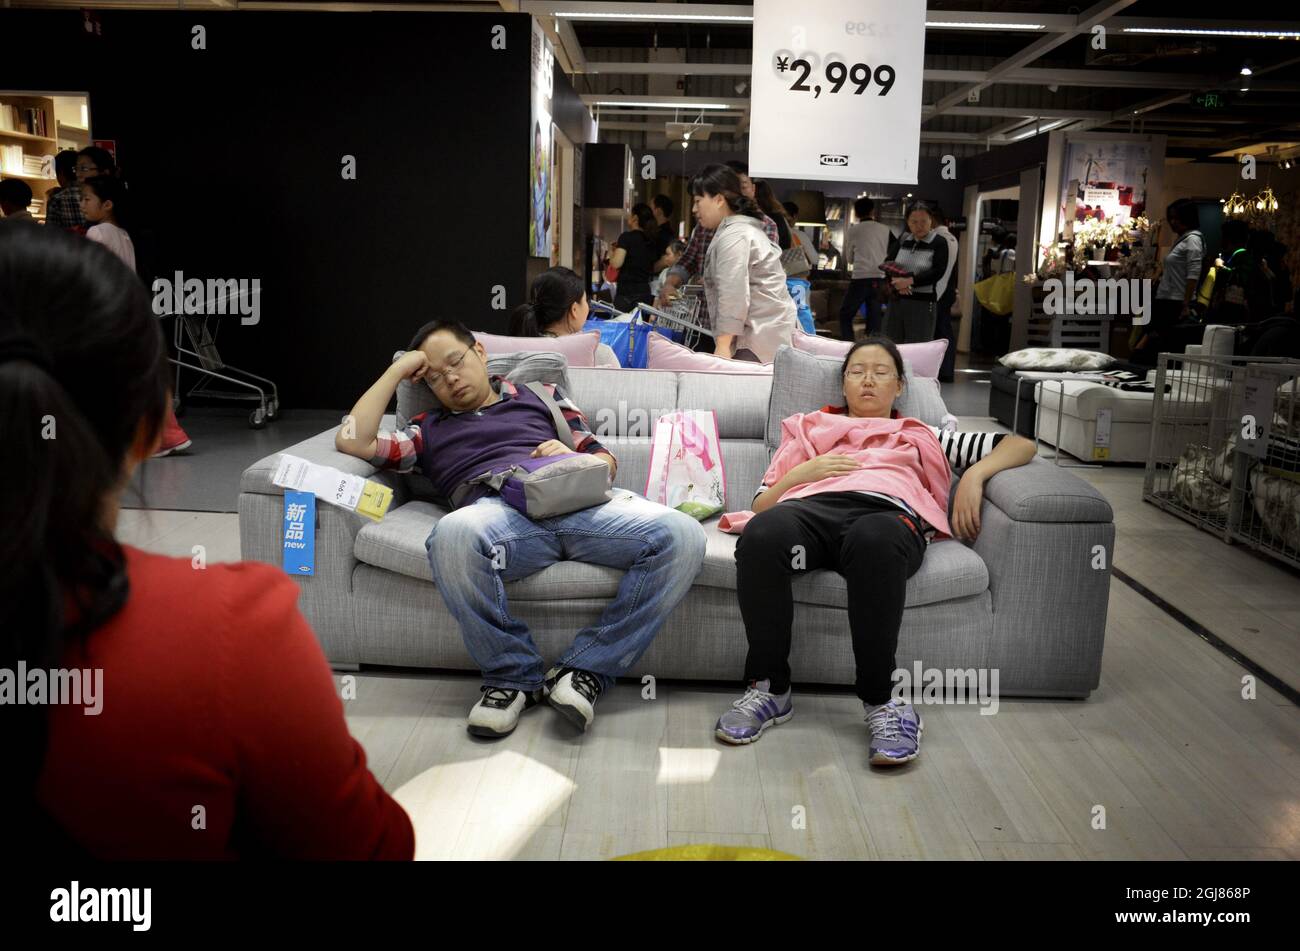 KINA 2013-09-27 Kunden in einem IKEA Möbelgeschäft in China September 2013. Kunden, die in den Betten und Sofas von IKEA einschlafen, sind in China nicht ungewöhnlich. Aber thatâ ist laut IKEA-Management kein Problem – Wir heißen alle willkommen, die in unsere Läden kommen wollen. Alle unsere Besucher sind potenzielle Kunden, sagte Linda Xu, Öffentlichkeitsarbeit für den Ikea-Grouo in China, laut der Schwedischen Zeitung DN, die Le Figaro quoting. Seit sich Ikea vor 15 Jahren in China etabliert hat, ist das Land zu einem ihrer wichtigsten Märkte geworden. Fast 15 Millionen Menschen besuchten die 11 Geschäfte in China la Stockfoto